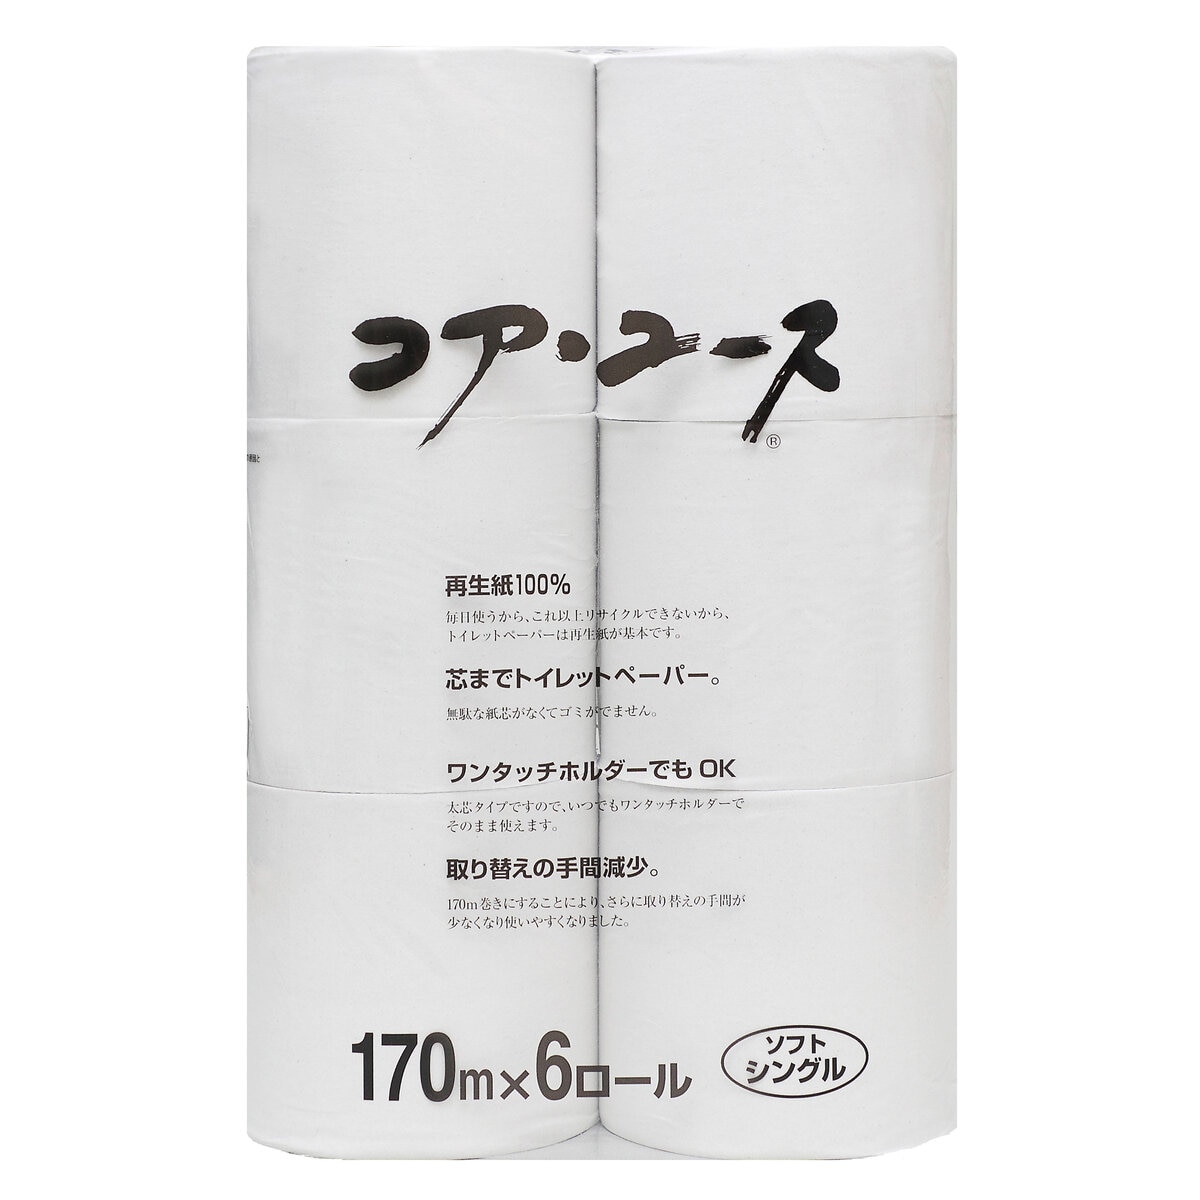 コア ユース シングル 170m x 24 ロール 再生紙 | Costco Japan